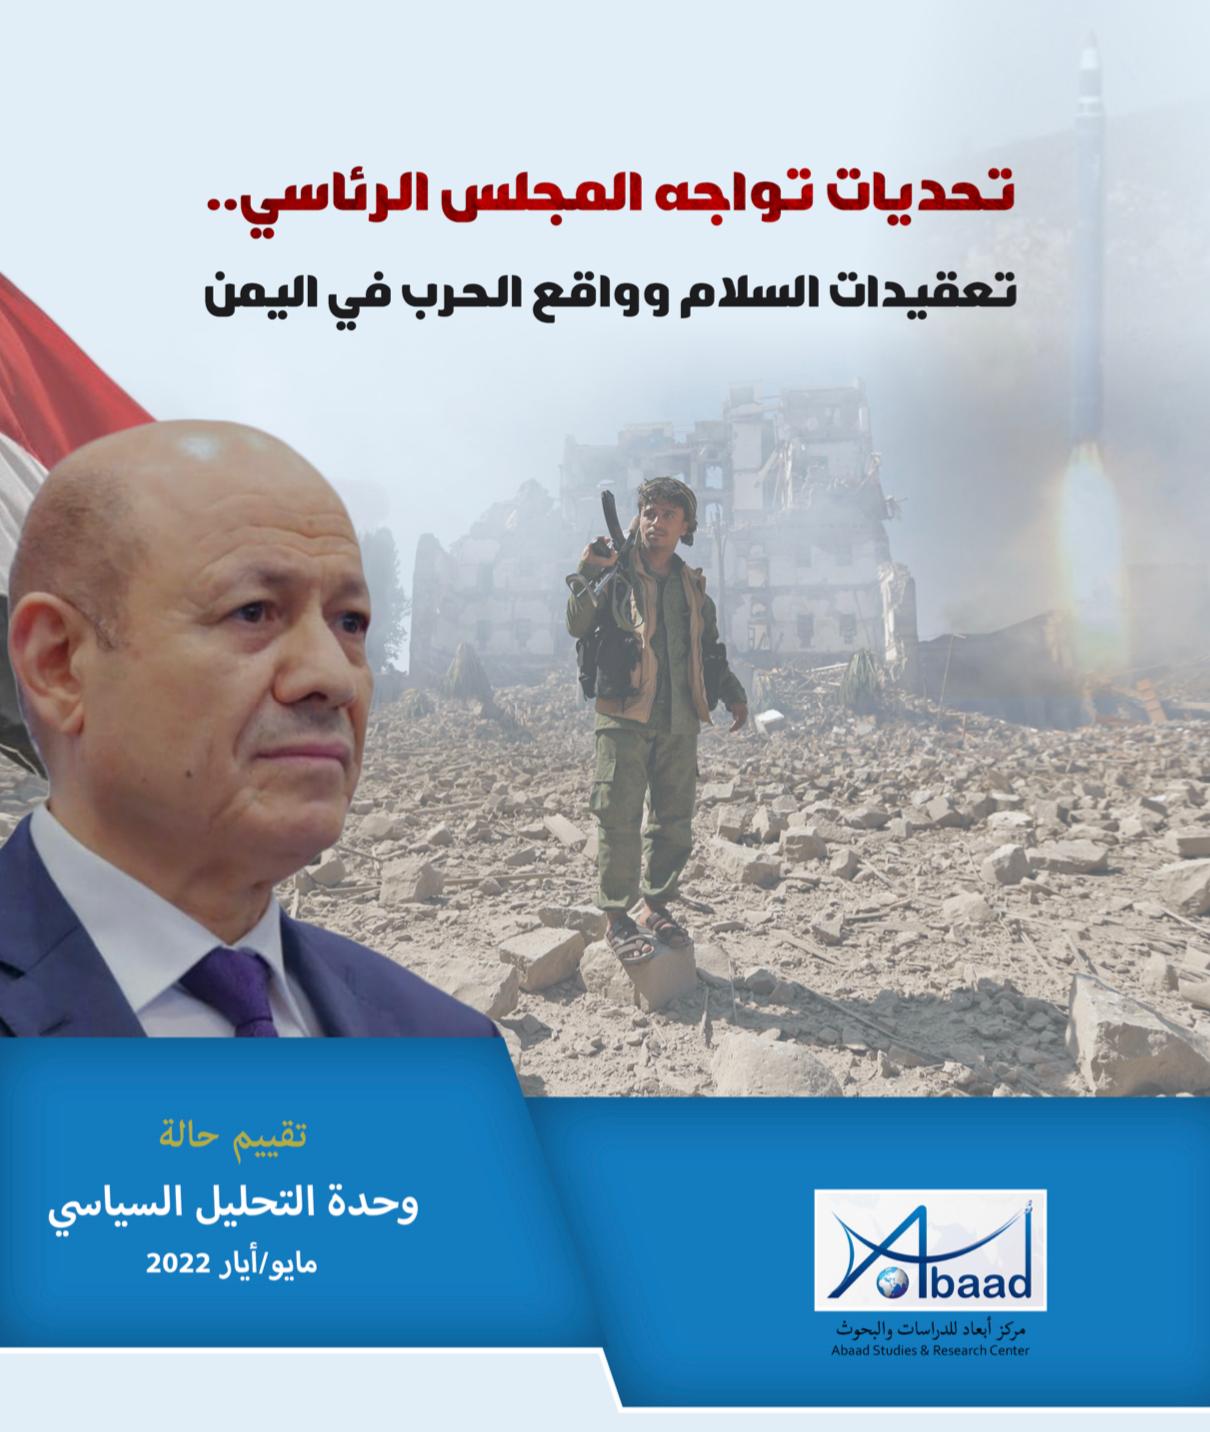  تحديات تواجه المجلس الرئاسي..  تعقيدات السلام وواقع الحرب في اليمن